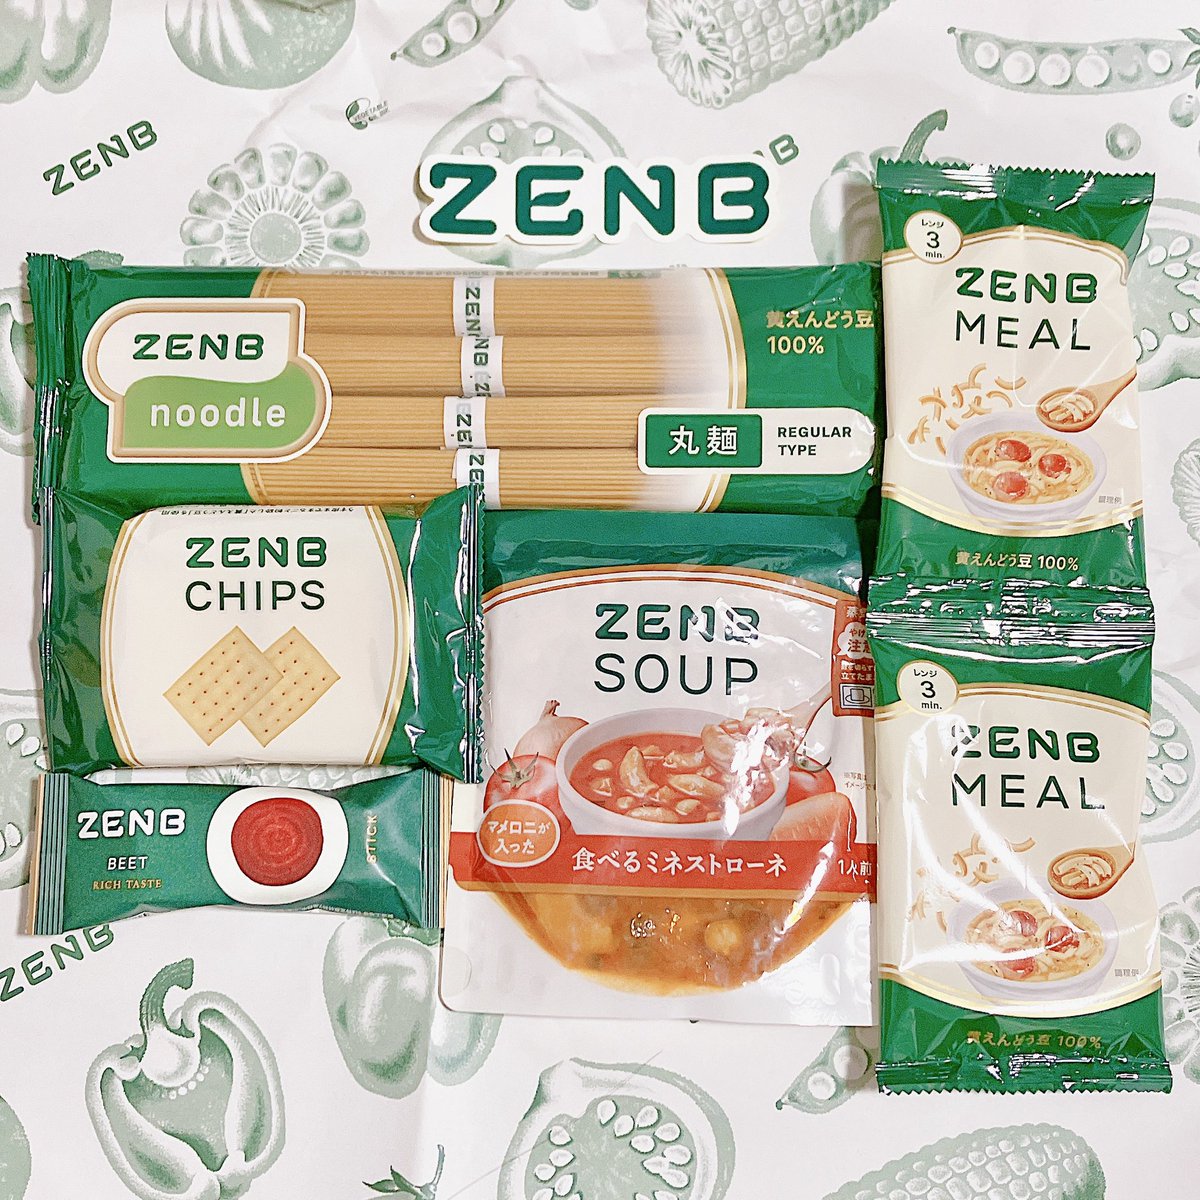 @Zenb_jp ZENB JAPAN 様より
ZENB賞 当選となりました🫶🏻

ZENB人気商品セットの
⌇SOUP 食べるミネストローネ
⌇MEAL
⌇BEET RICH TASTE
⌇CHIPS
⌇noodle
お豆や野菜を楽しめ、からだにやさしくヘルシーな食を
楽しめる🥰
HPにはレシピの紹介もあり、とても美味しく作れました✨️…